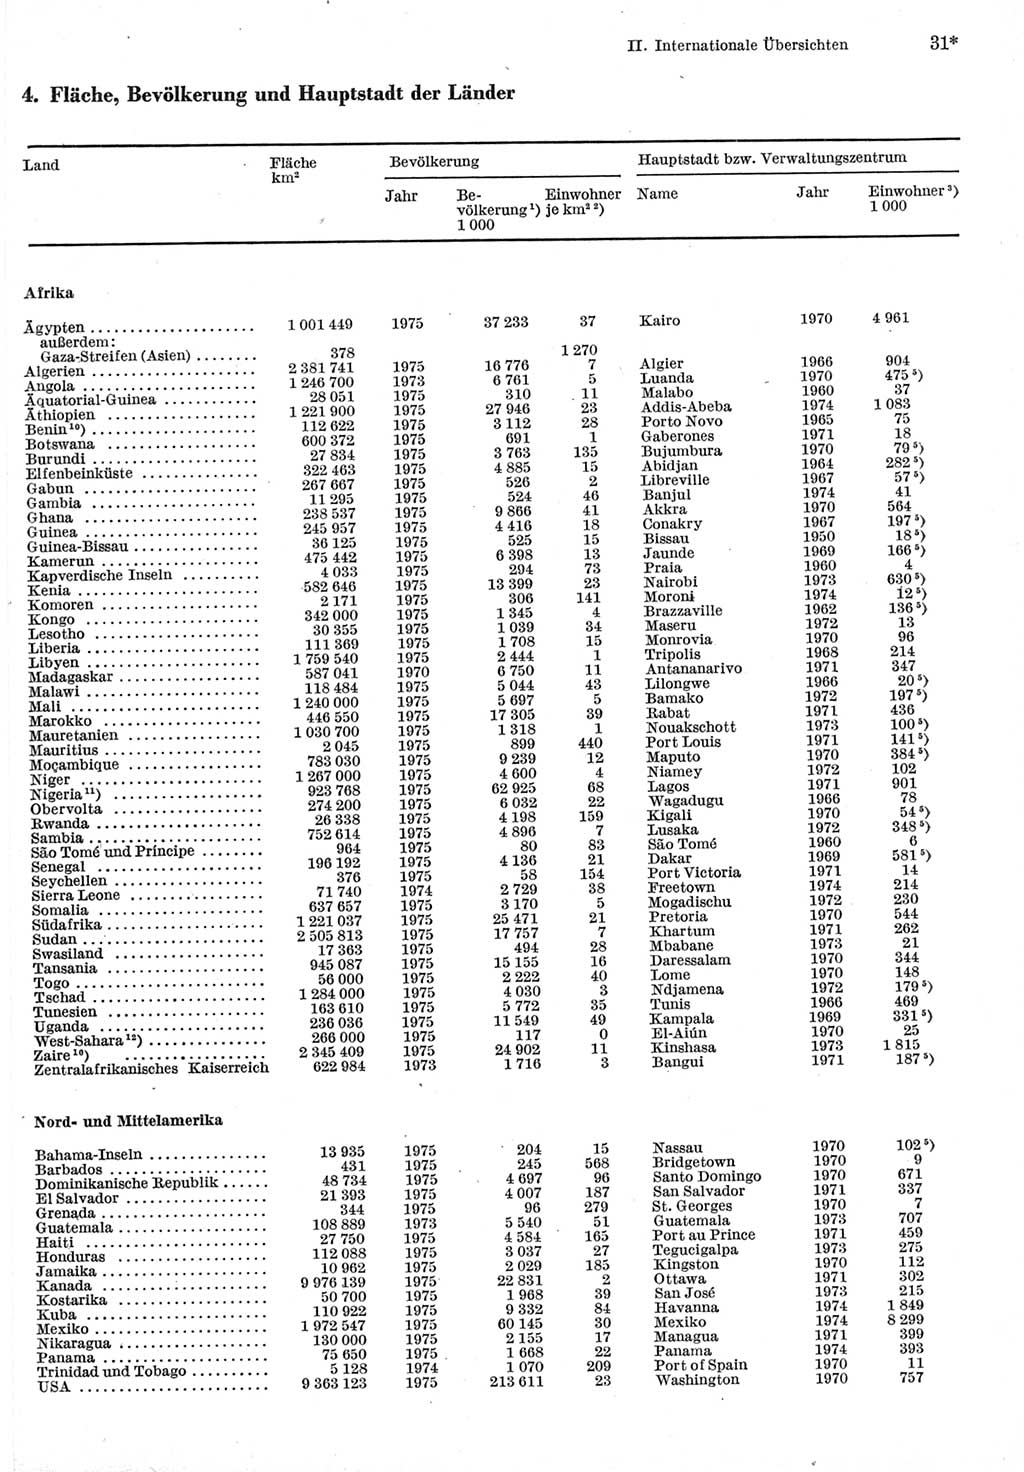 Statistisches Jahrbuch der Deutschen Demokratischen Republik (DDR) 1977, Seite 31 (Stat. Jb. DDR 1977, S. 31)